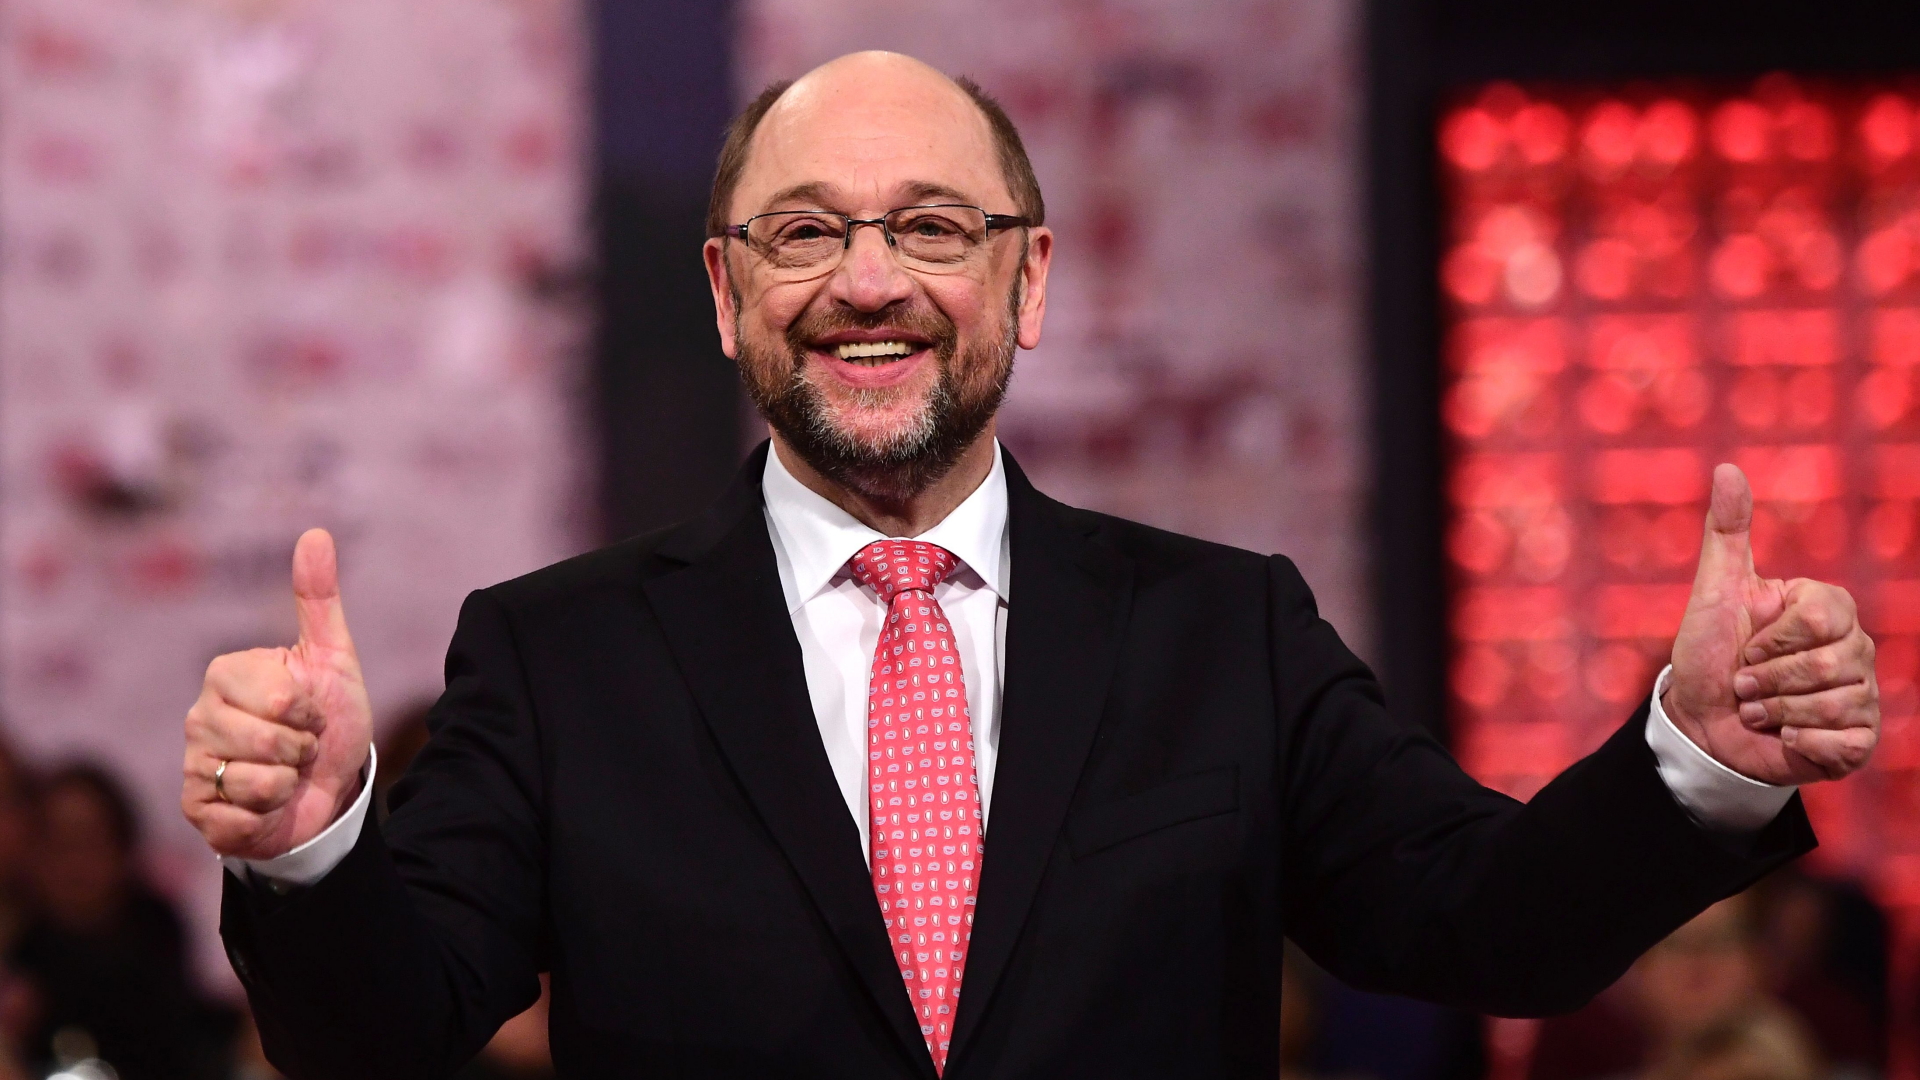 Neuer SPD-Chef: Blackbox Schulz